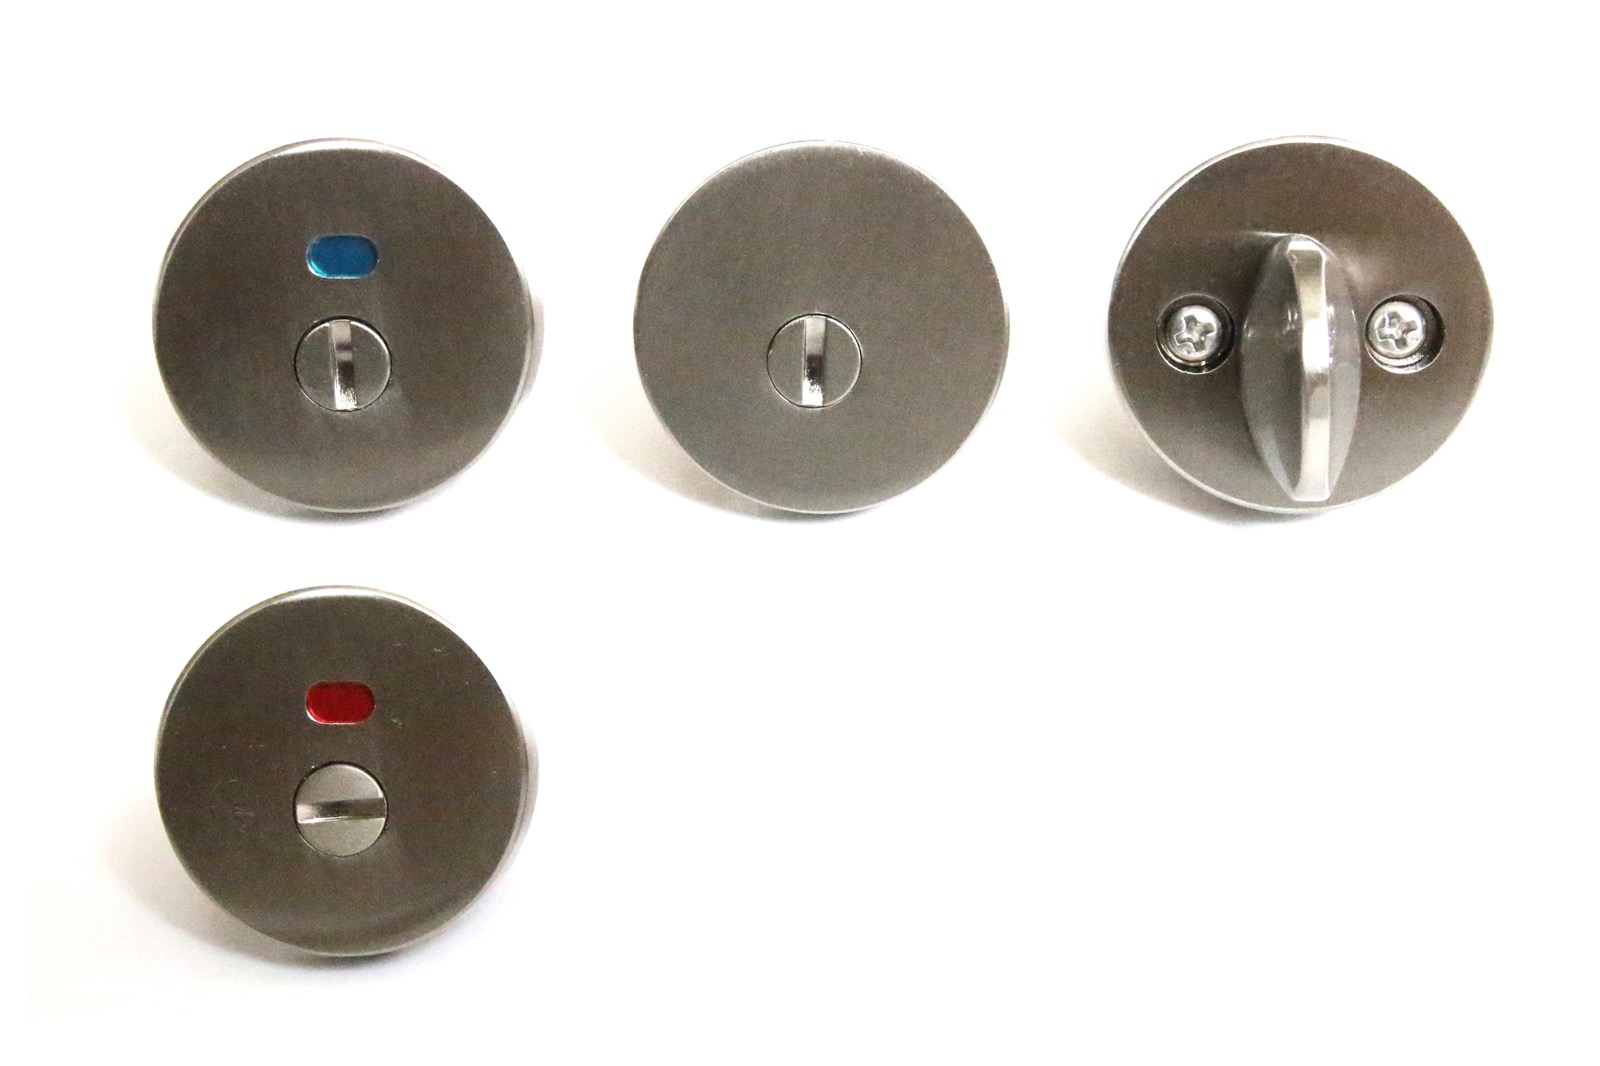 木のドアパーツ ドアノブ タモ PS-HD010-01-G185 オプションの錠です。左が表示錠、中央が間仕切錠、右は裏面にあたるサムターンです